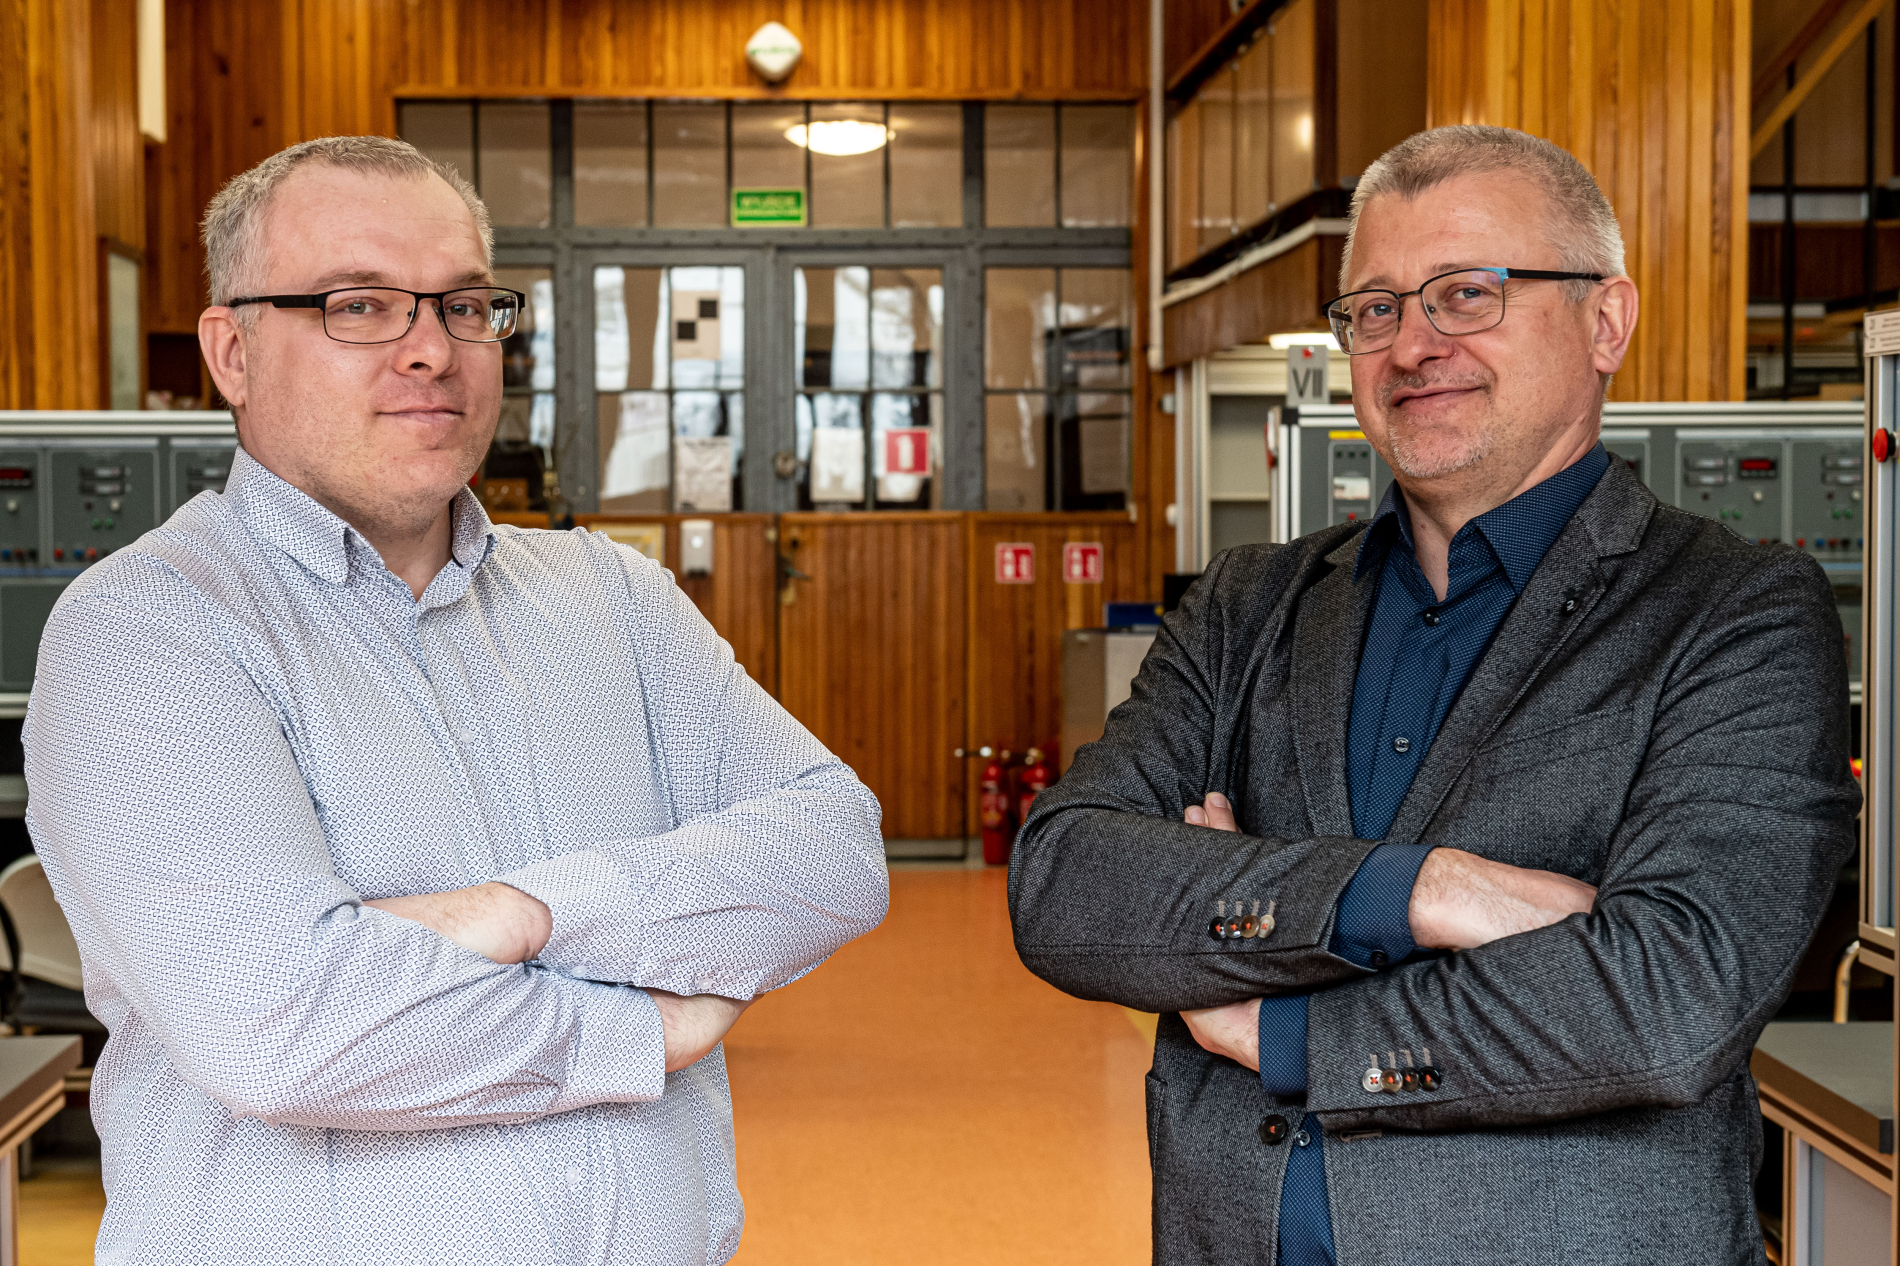 prof. Mateusz Dybkowski and prof. Krzysztof Szabat